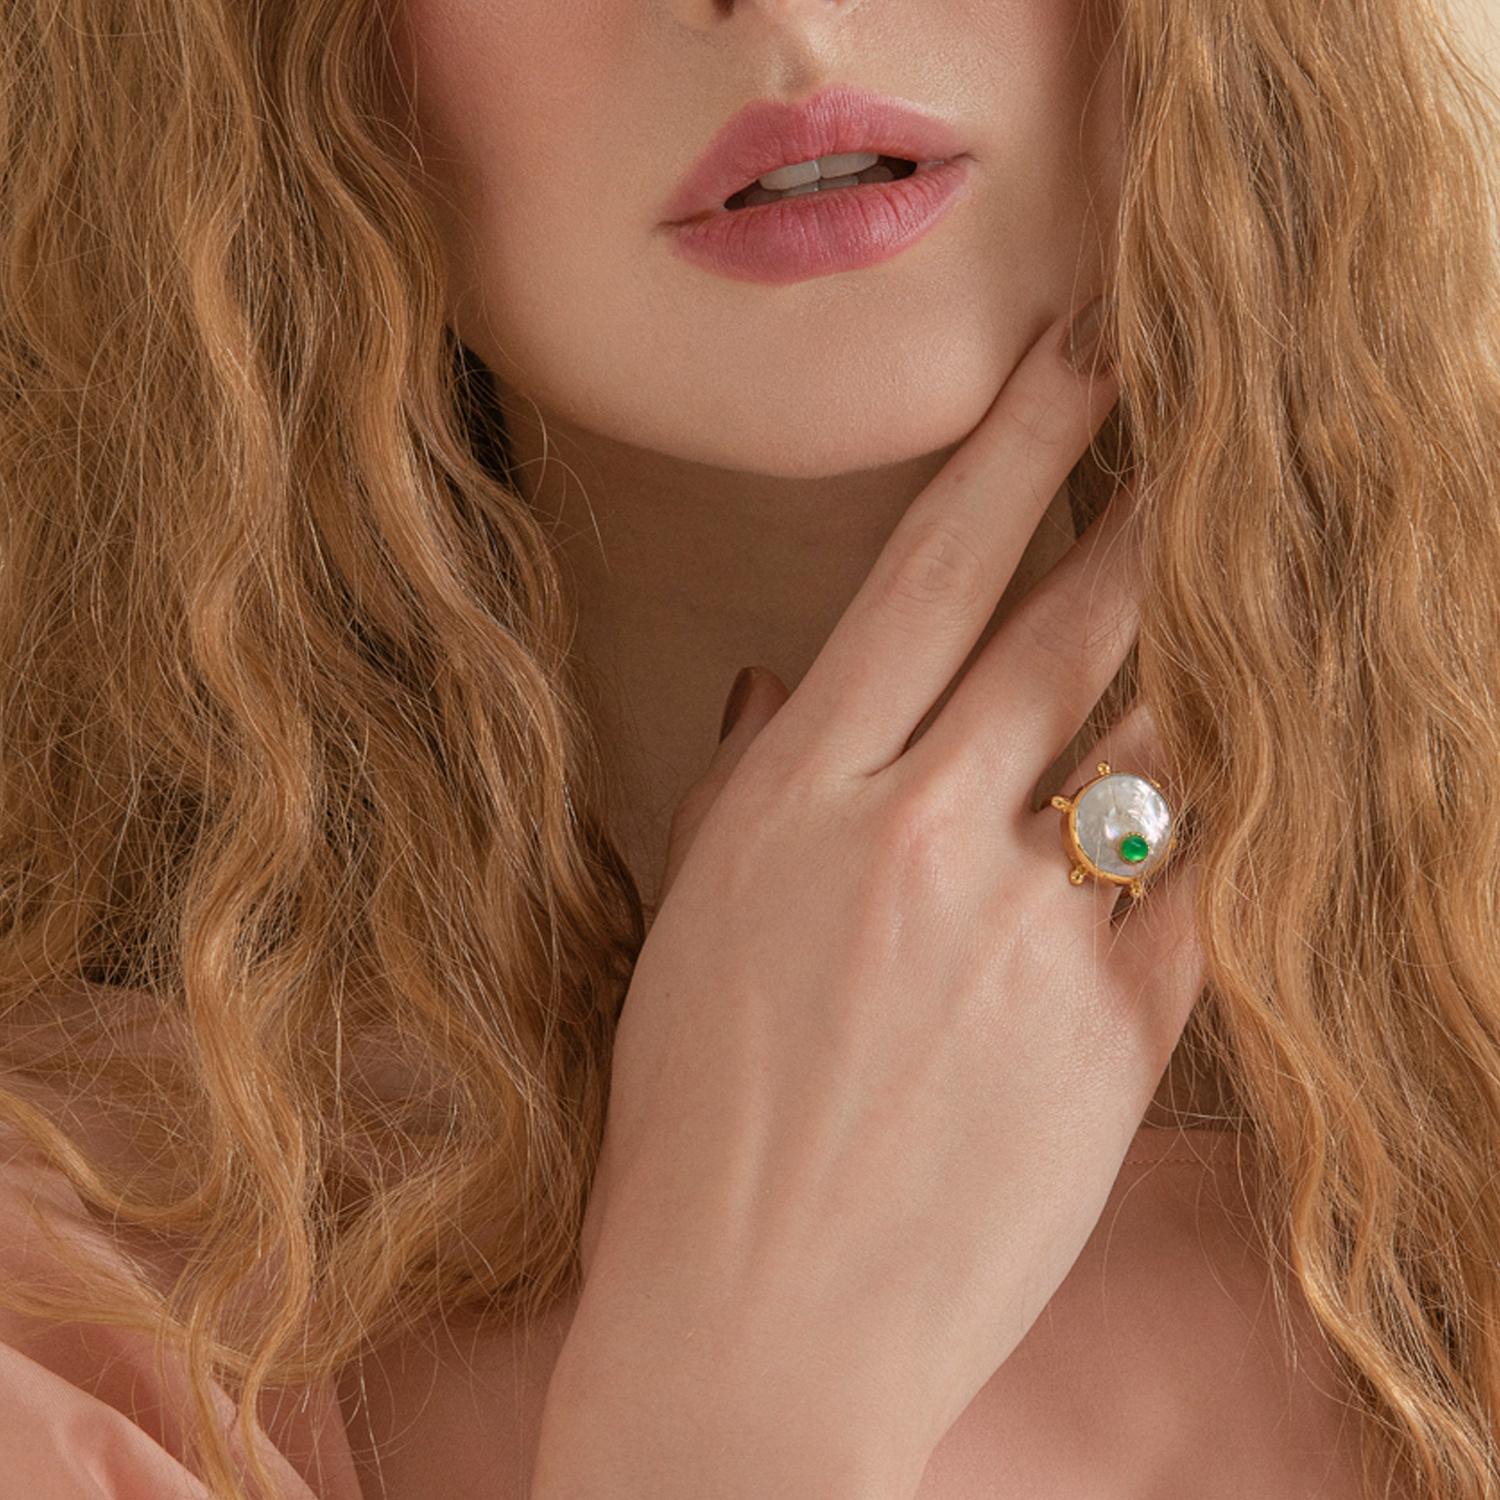 Alessandro Ricevuto, der Gründer von Vintouch, liebt Keshi-Perlen wegen ihrer wunderschönen unregelmäßigen Formen, die jede von ihnen zu einem Unikat machen. Der Ring 